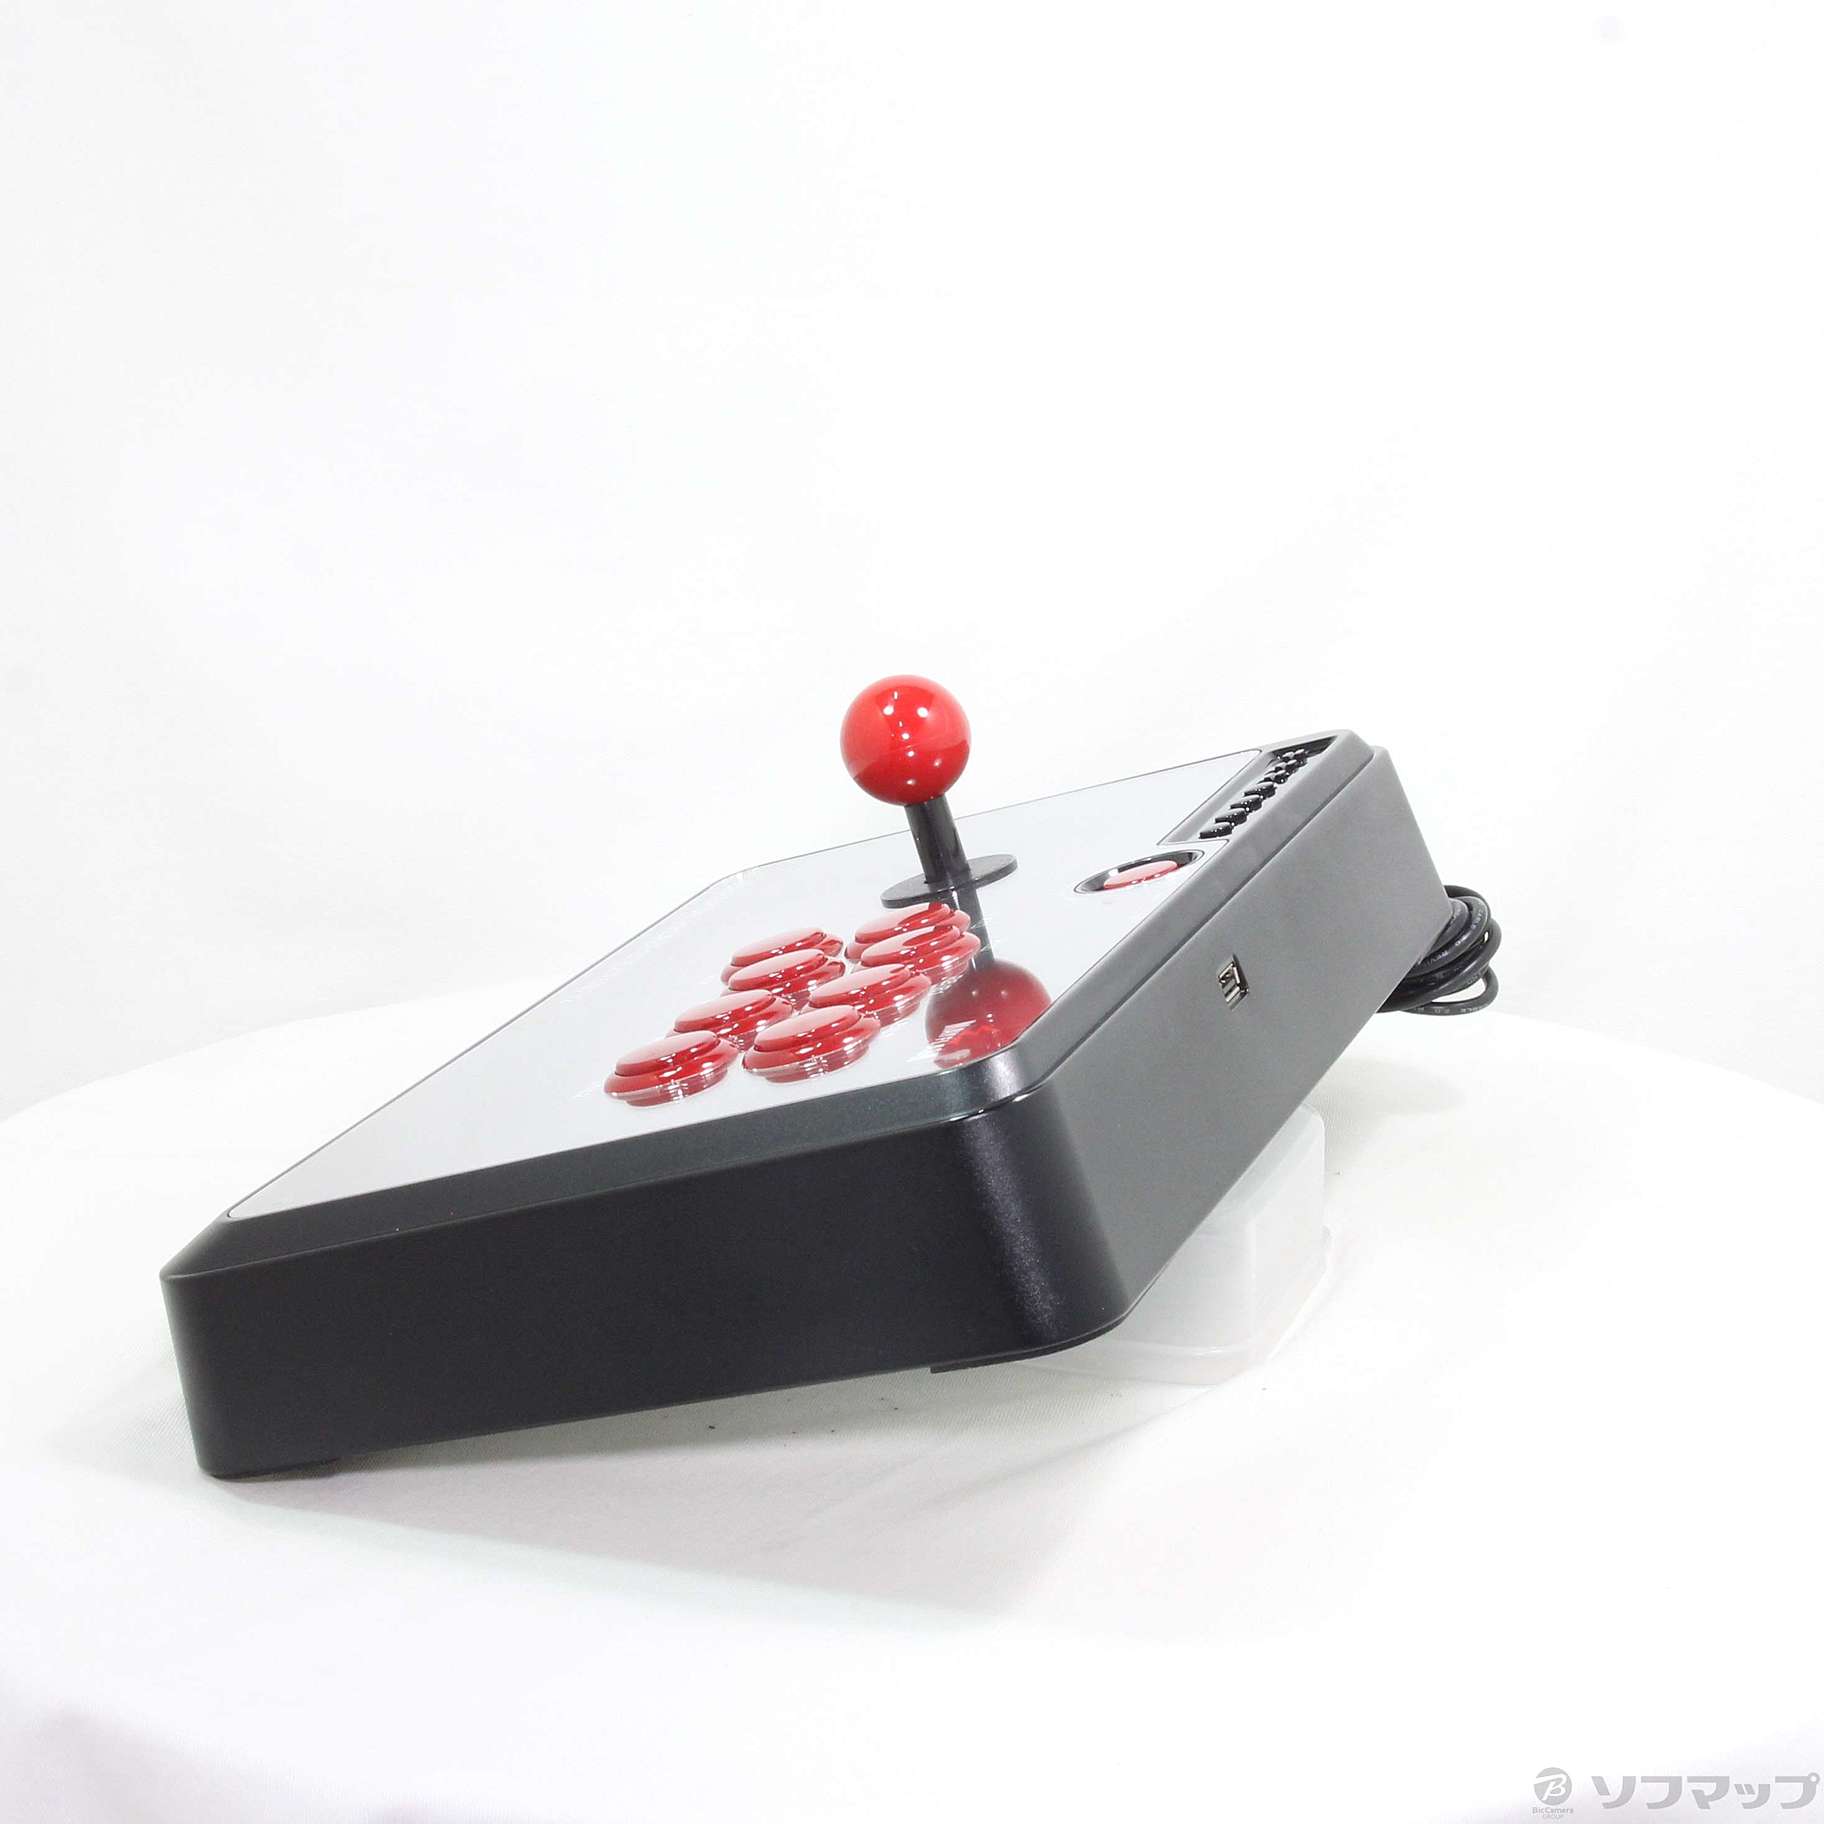 中古】MAYFLASH UNIVERSAL Arcade Stick F500 V2 【PS4 PS3 XboxOne 